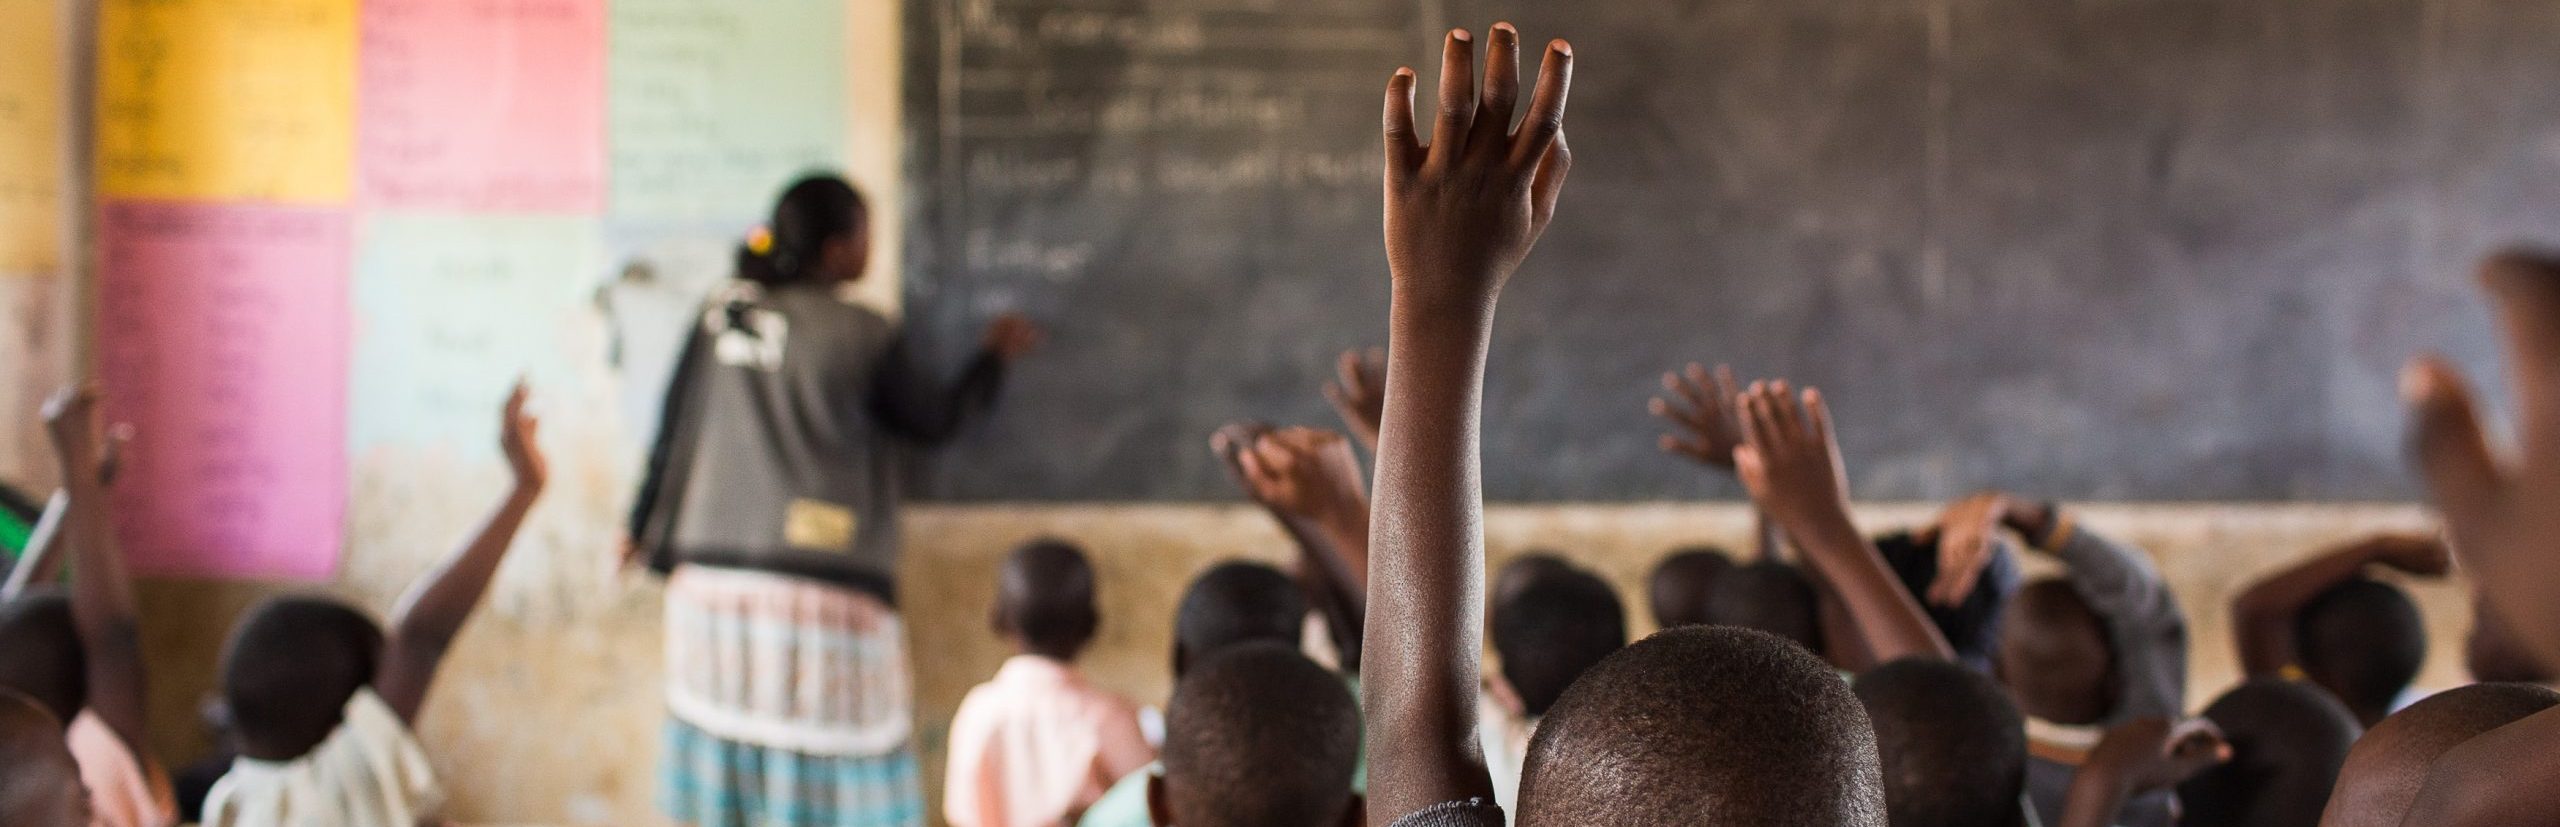 education for refugee children in kenya